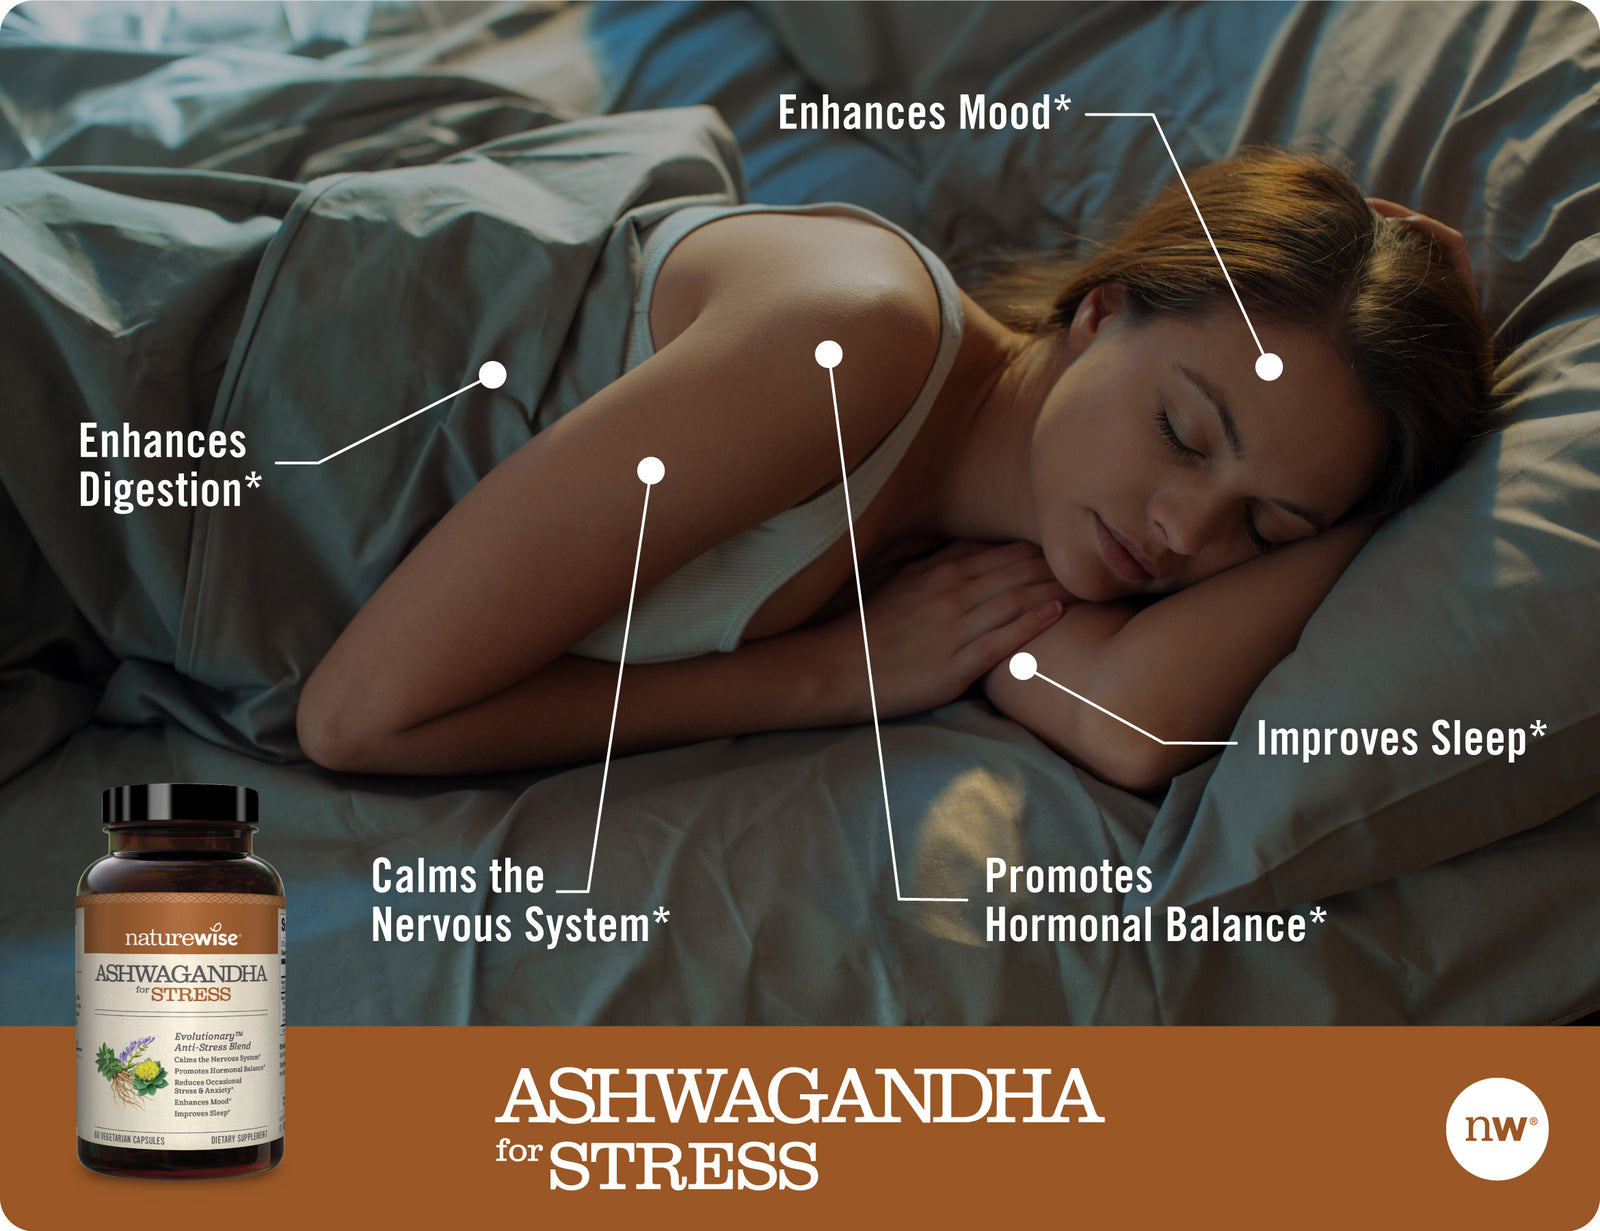 Ashwagandha for Stress benefits 